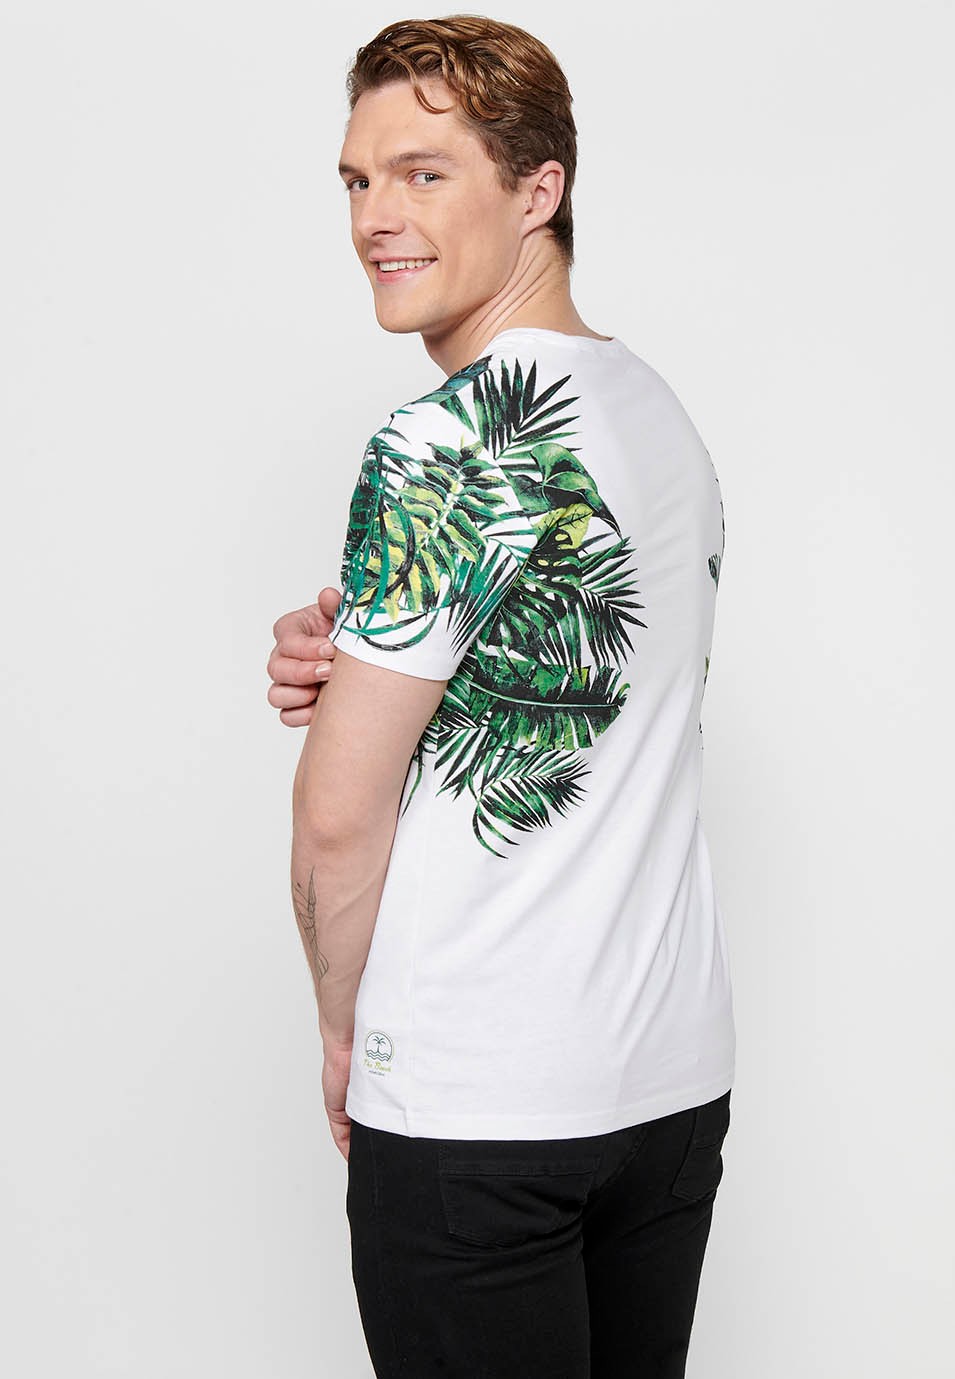 Camiseta de manga corta, estampado tropical y letras delanteras, color blanco para hombres